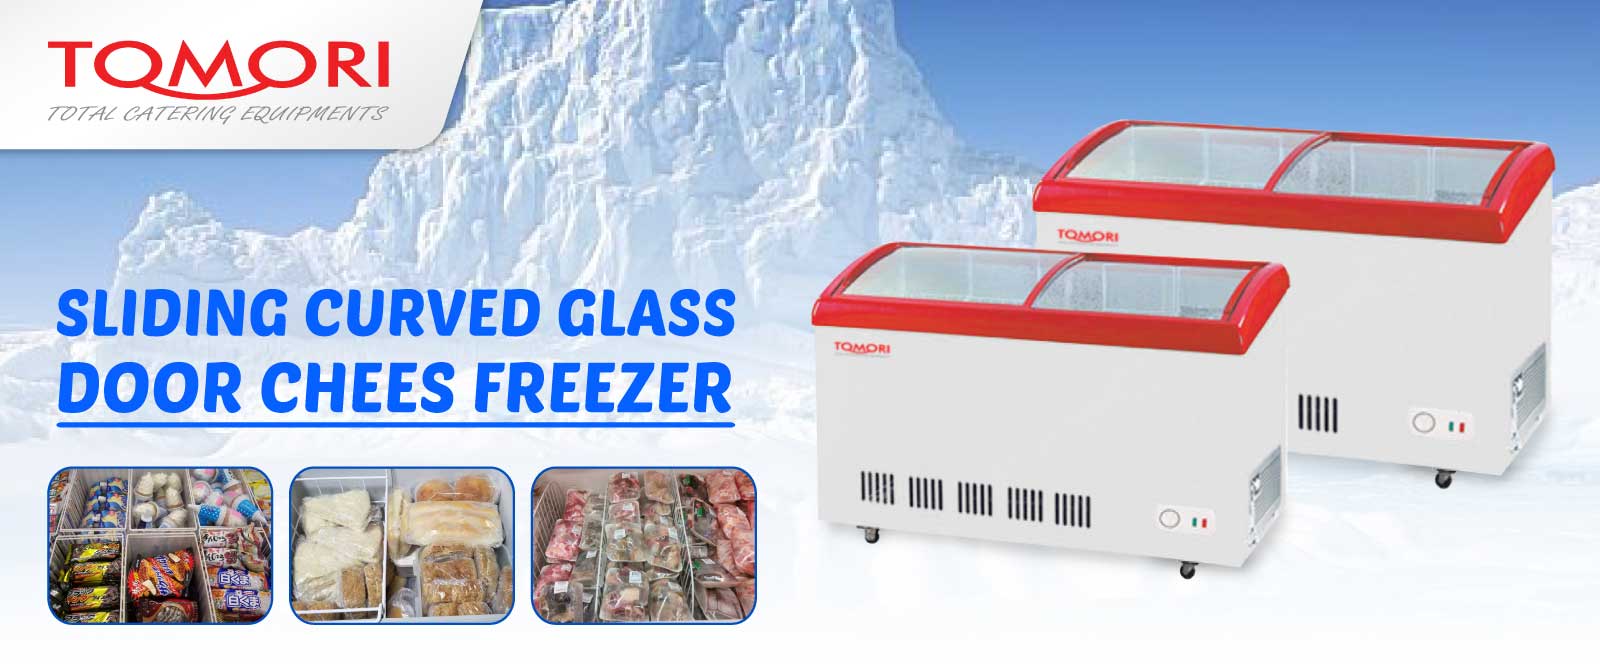 BannerTomori Curved Glass Deep Freezer